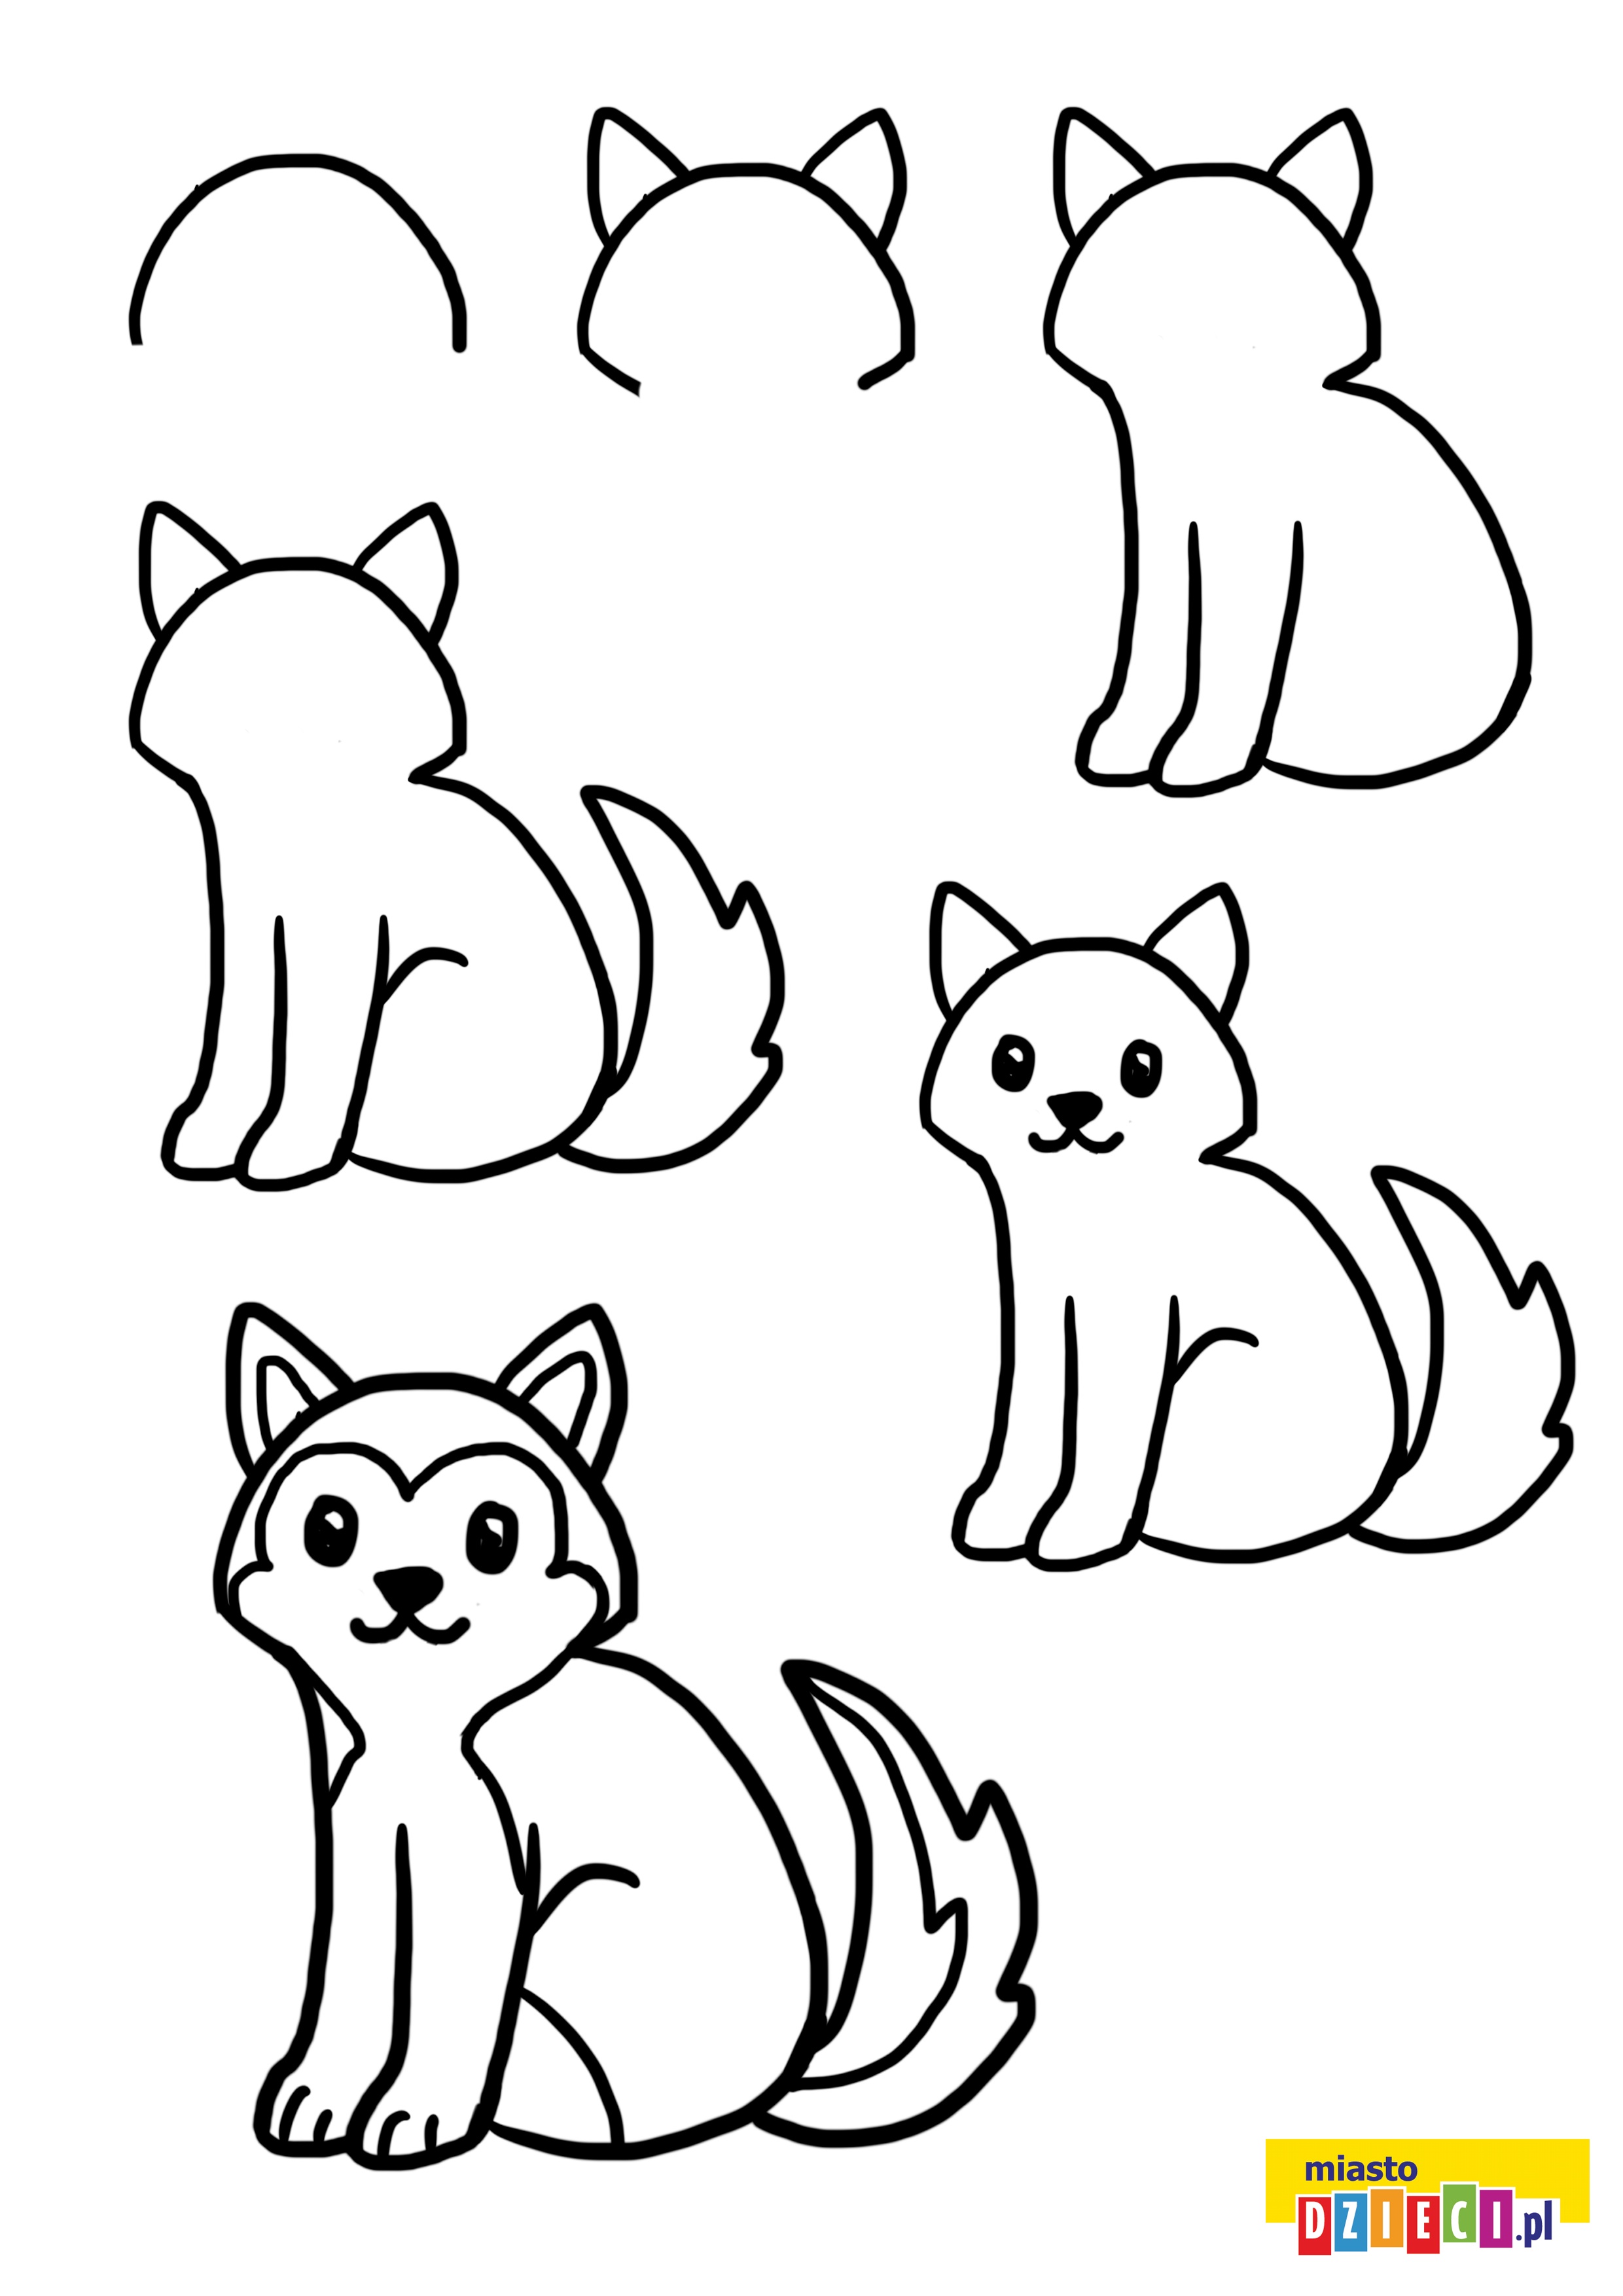 Jak narysować psa szczeniak husky szablony rysowania dla dzieci do druku